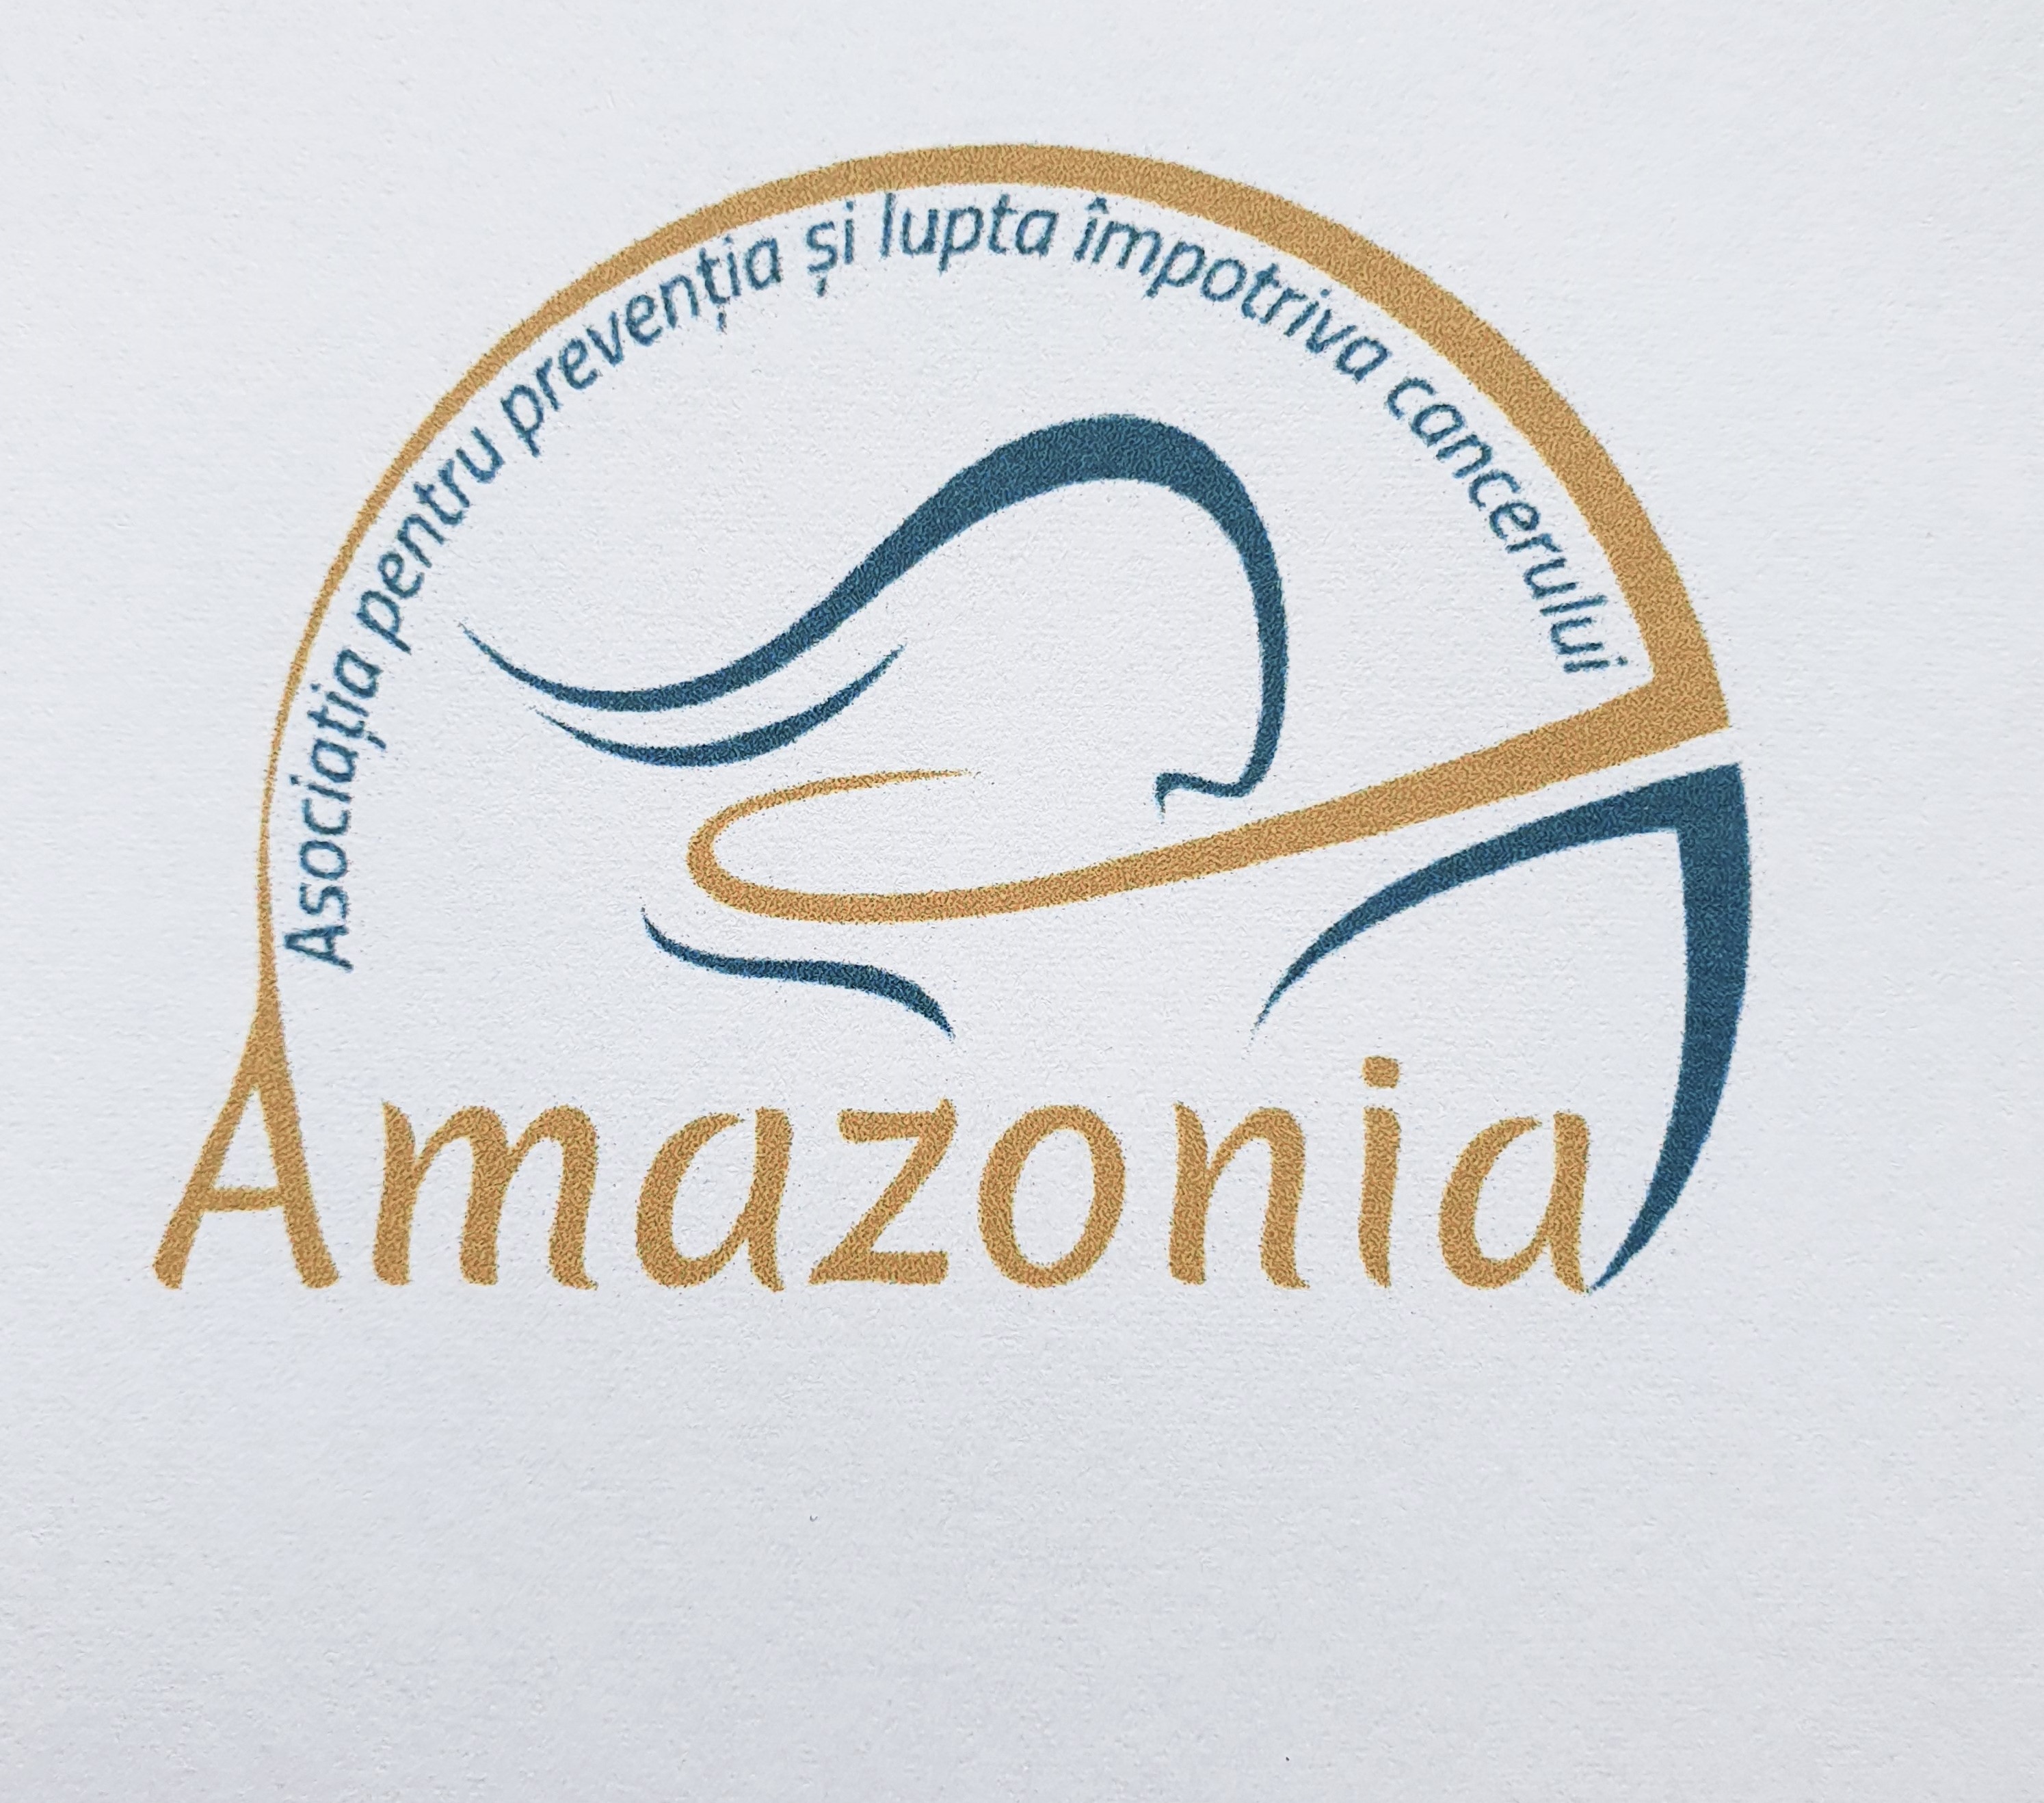 Asociatia pentru preventia si lupta impotriva cancerului AMAZONIA logo